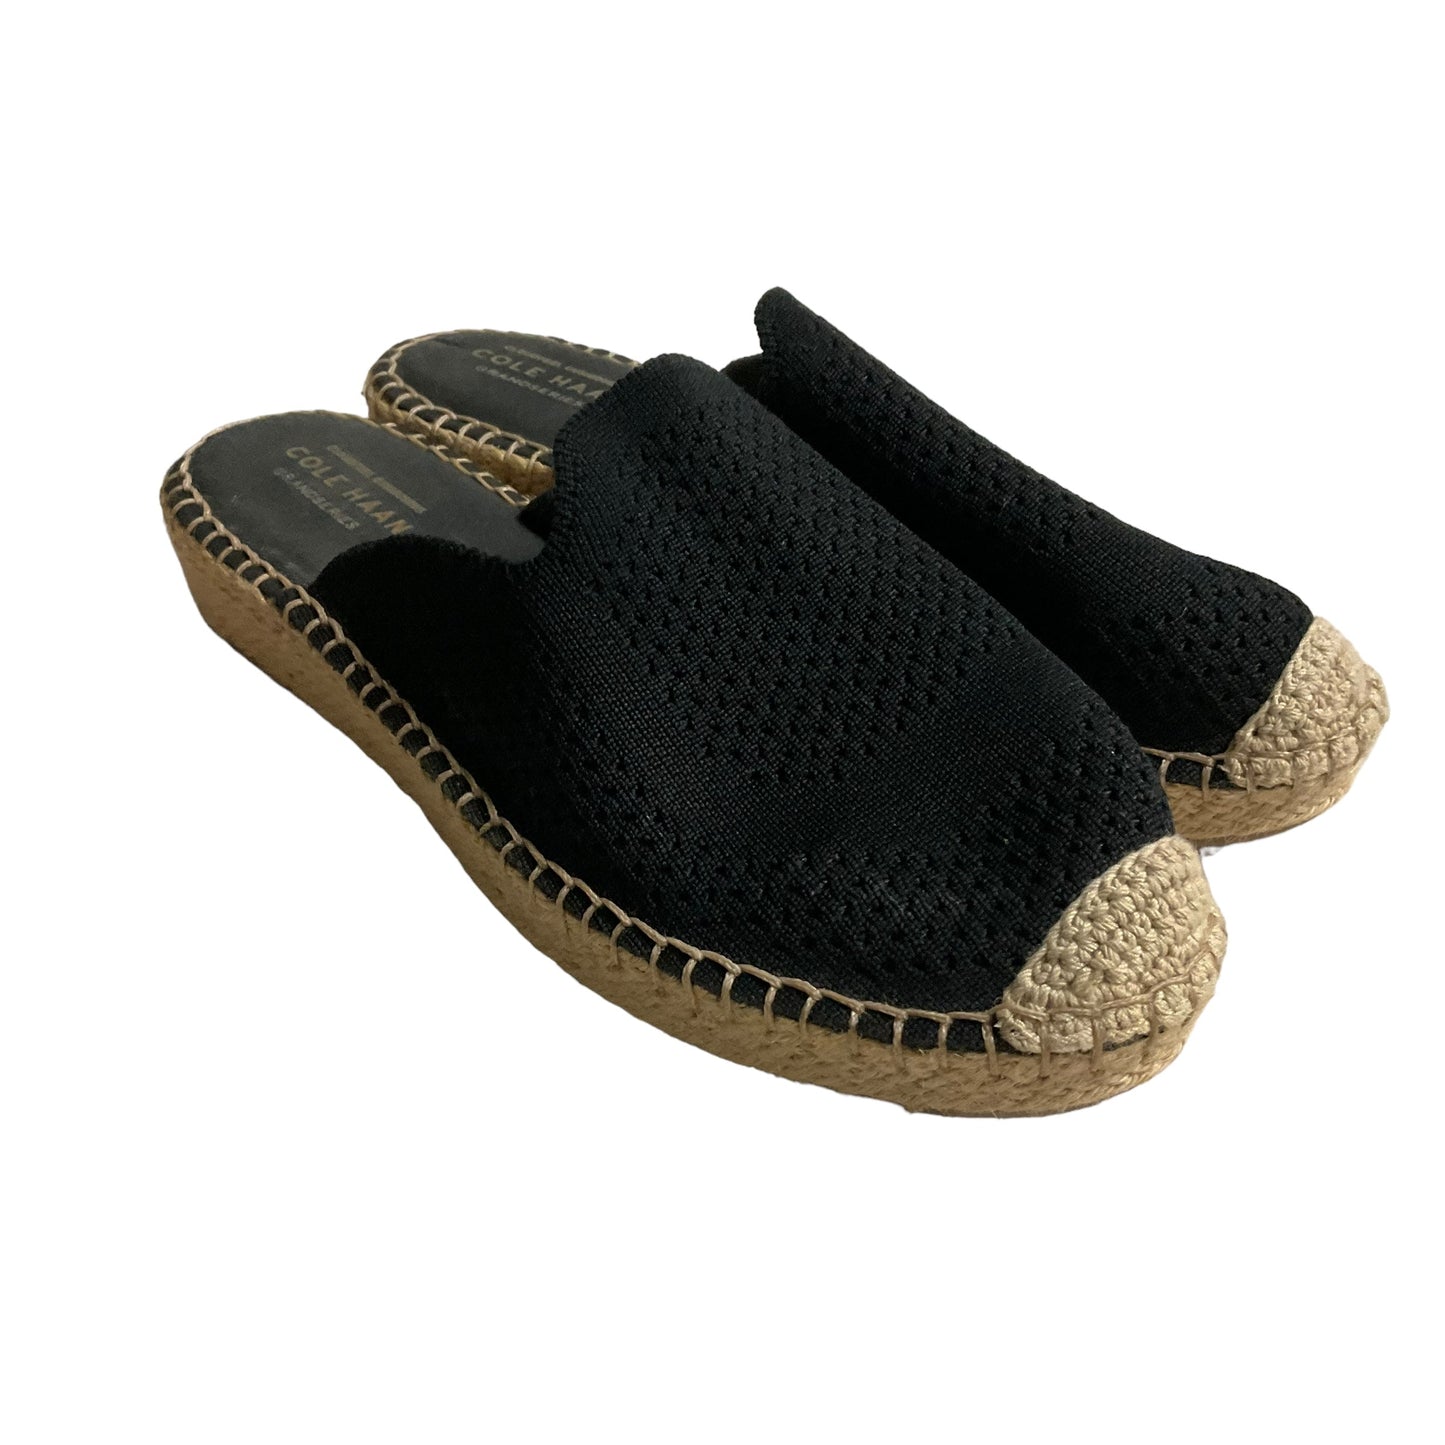 Black Sandals Flats Cole-haan, Size 7